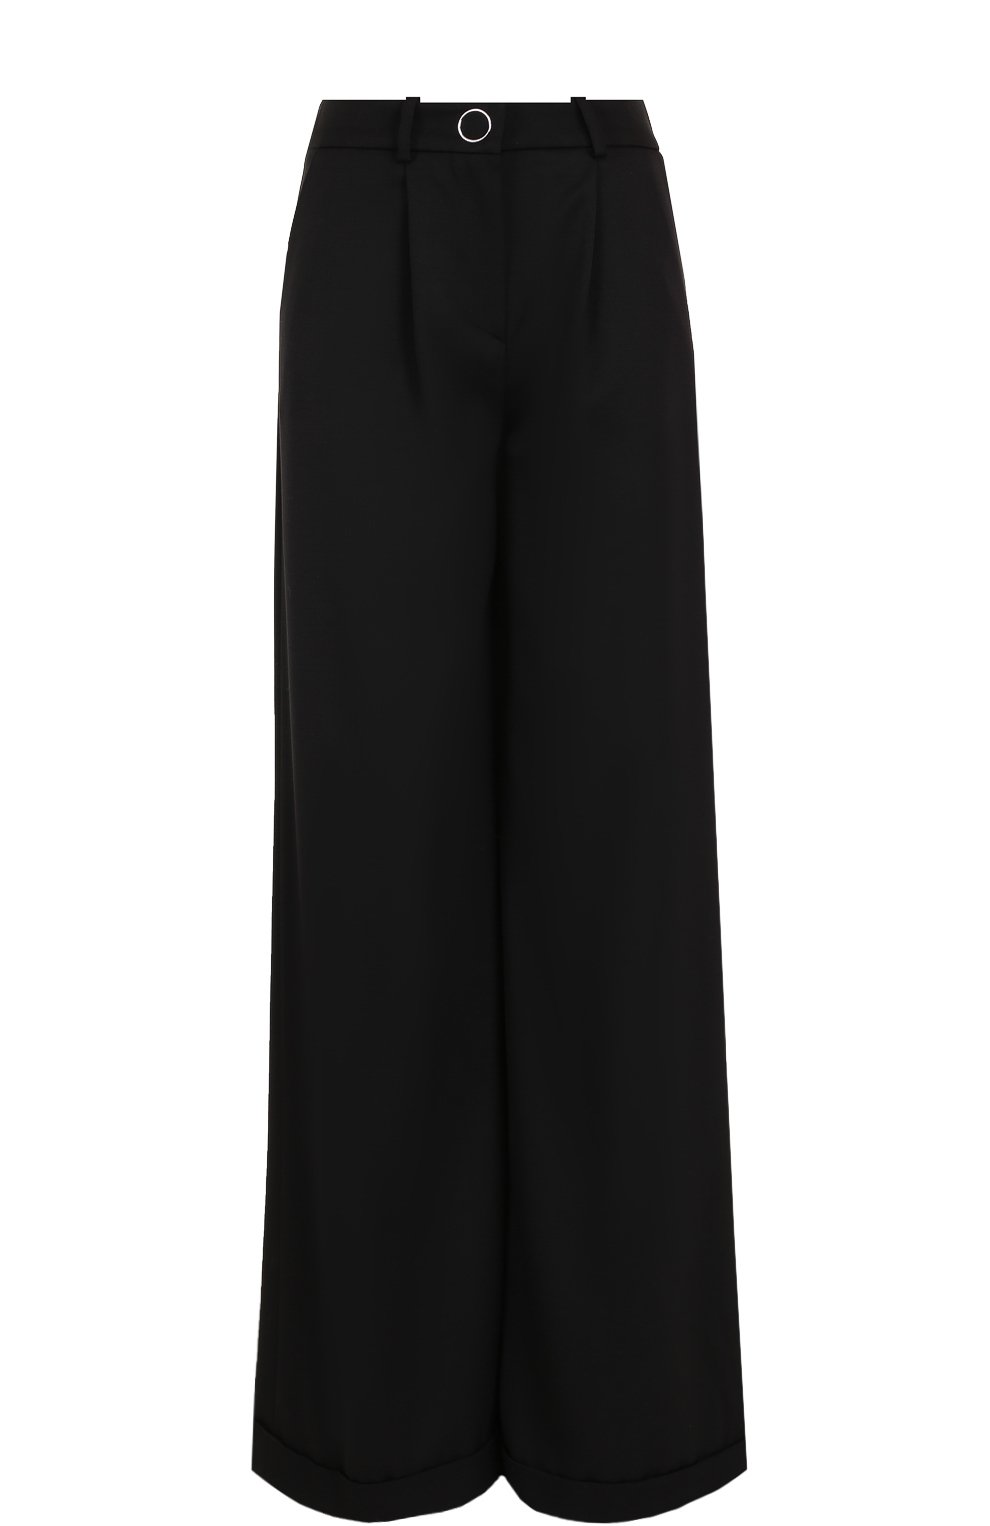 Женские черные шерстяные широкие брюки с защипами MUGLER купить винтернет-магазине ЦУМ, арт. PANTP202147B